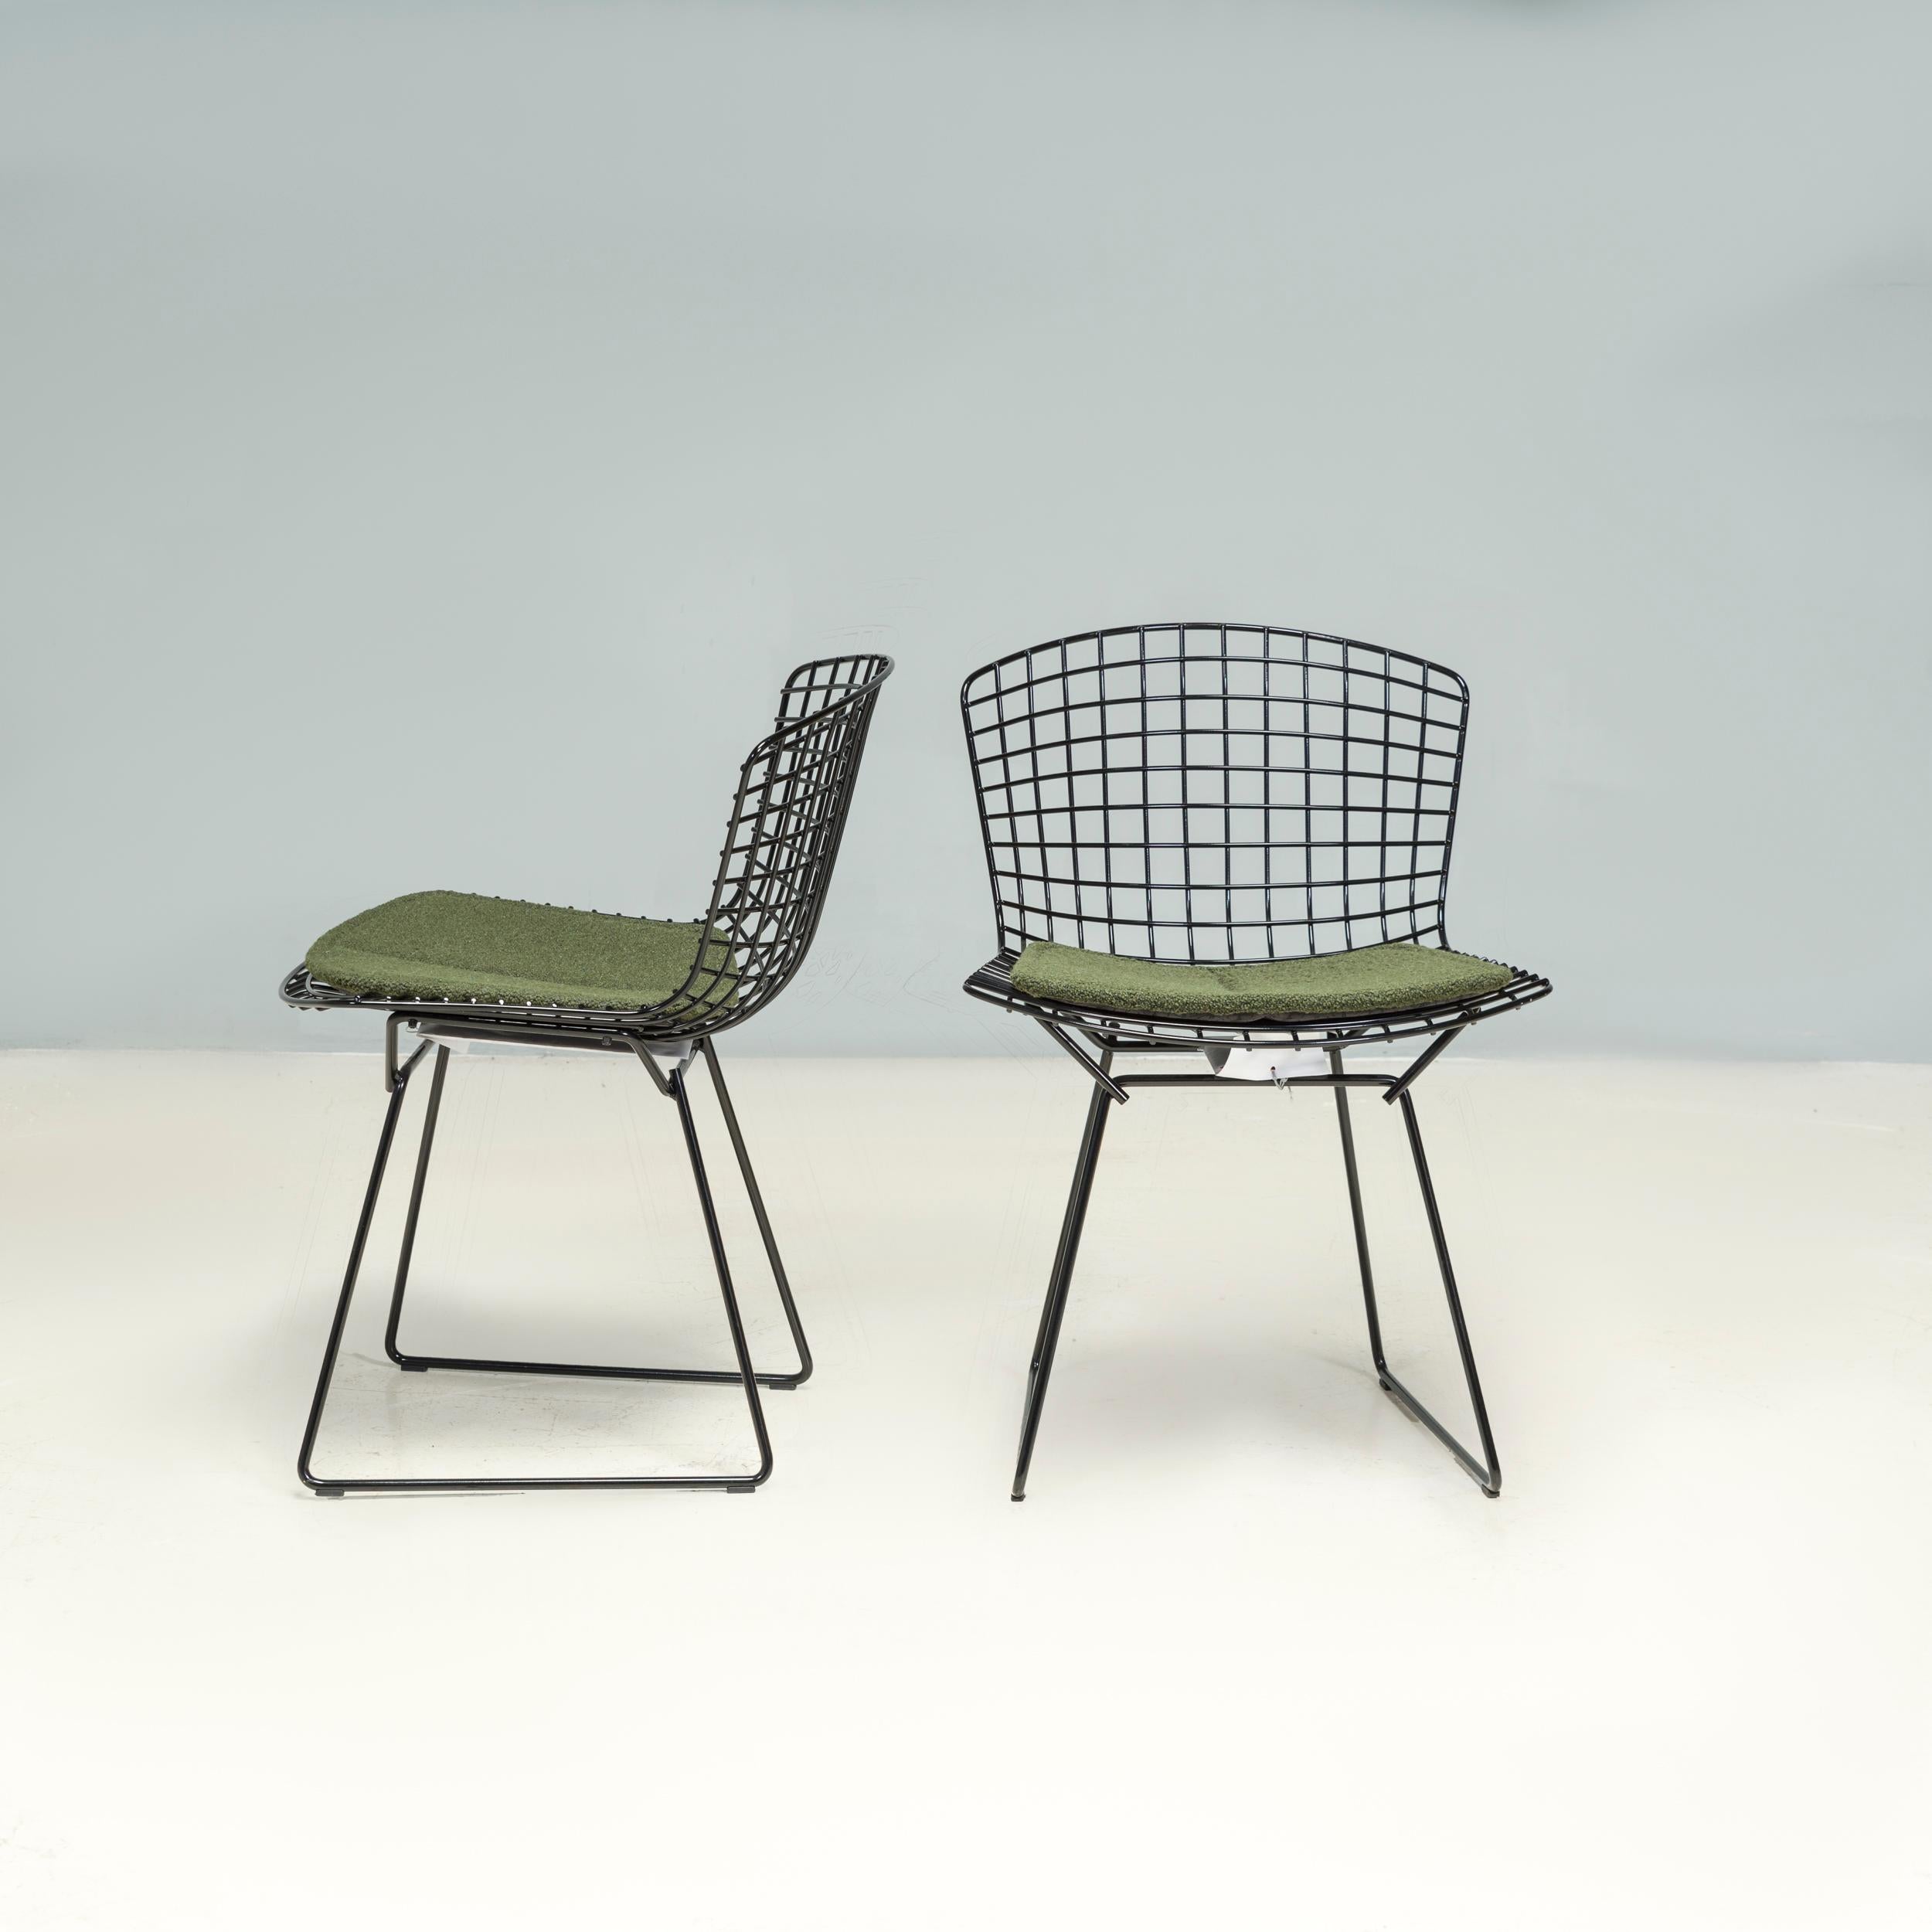 Ursprünglich von Harry Bertoia im Jahr 1952 entworfen, wird seine gleichnamige Kollektion seither von Knoll produziert. Der Beistellstuhl wurde zu einem der bekanntesten Möbelentwürfe des 20.

Der Stuhl besteht aus einem offenen Stahlgeflecht und